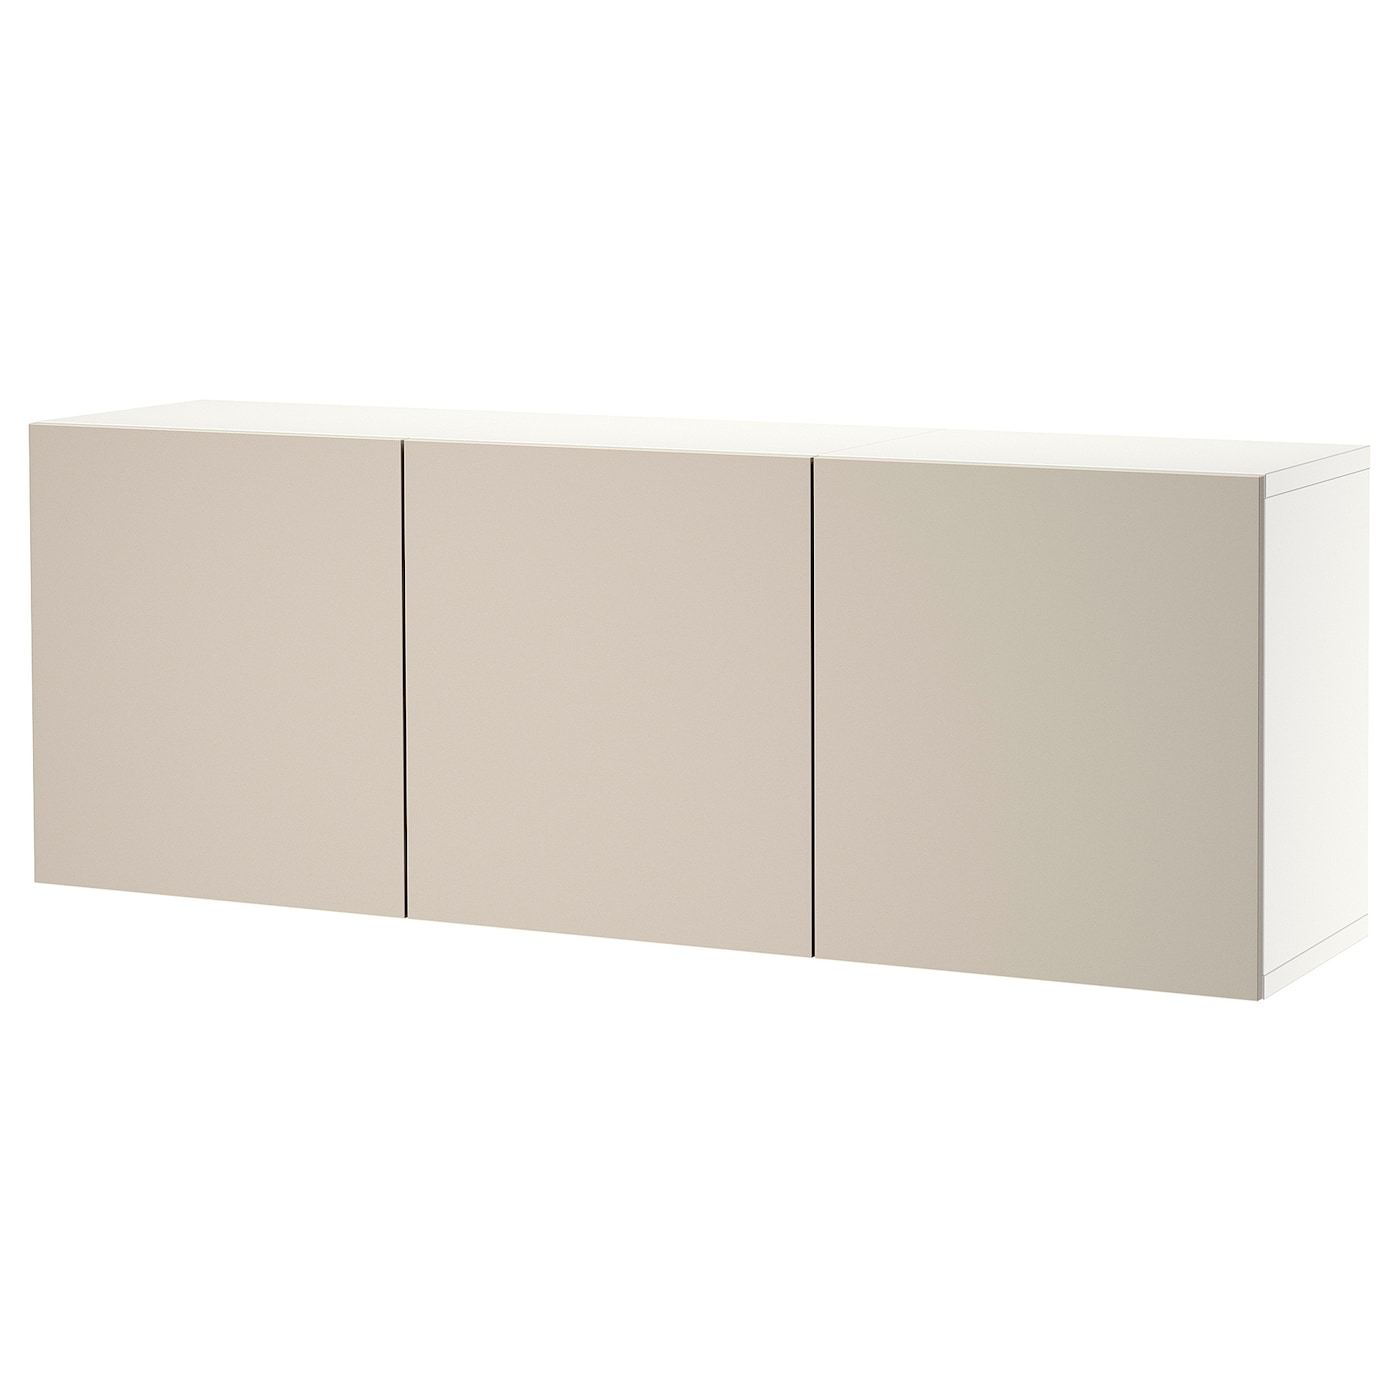 Навесной шкаф - IKEA BESTÅ/BESTA, 180x42x64 см, серый, Бесто ИКЕА